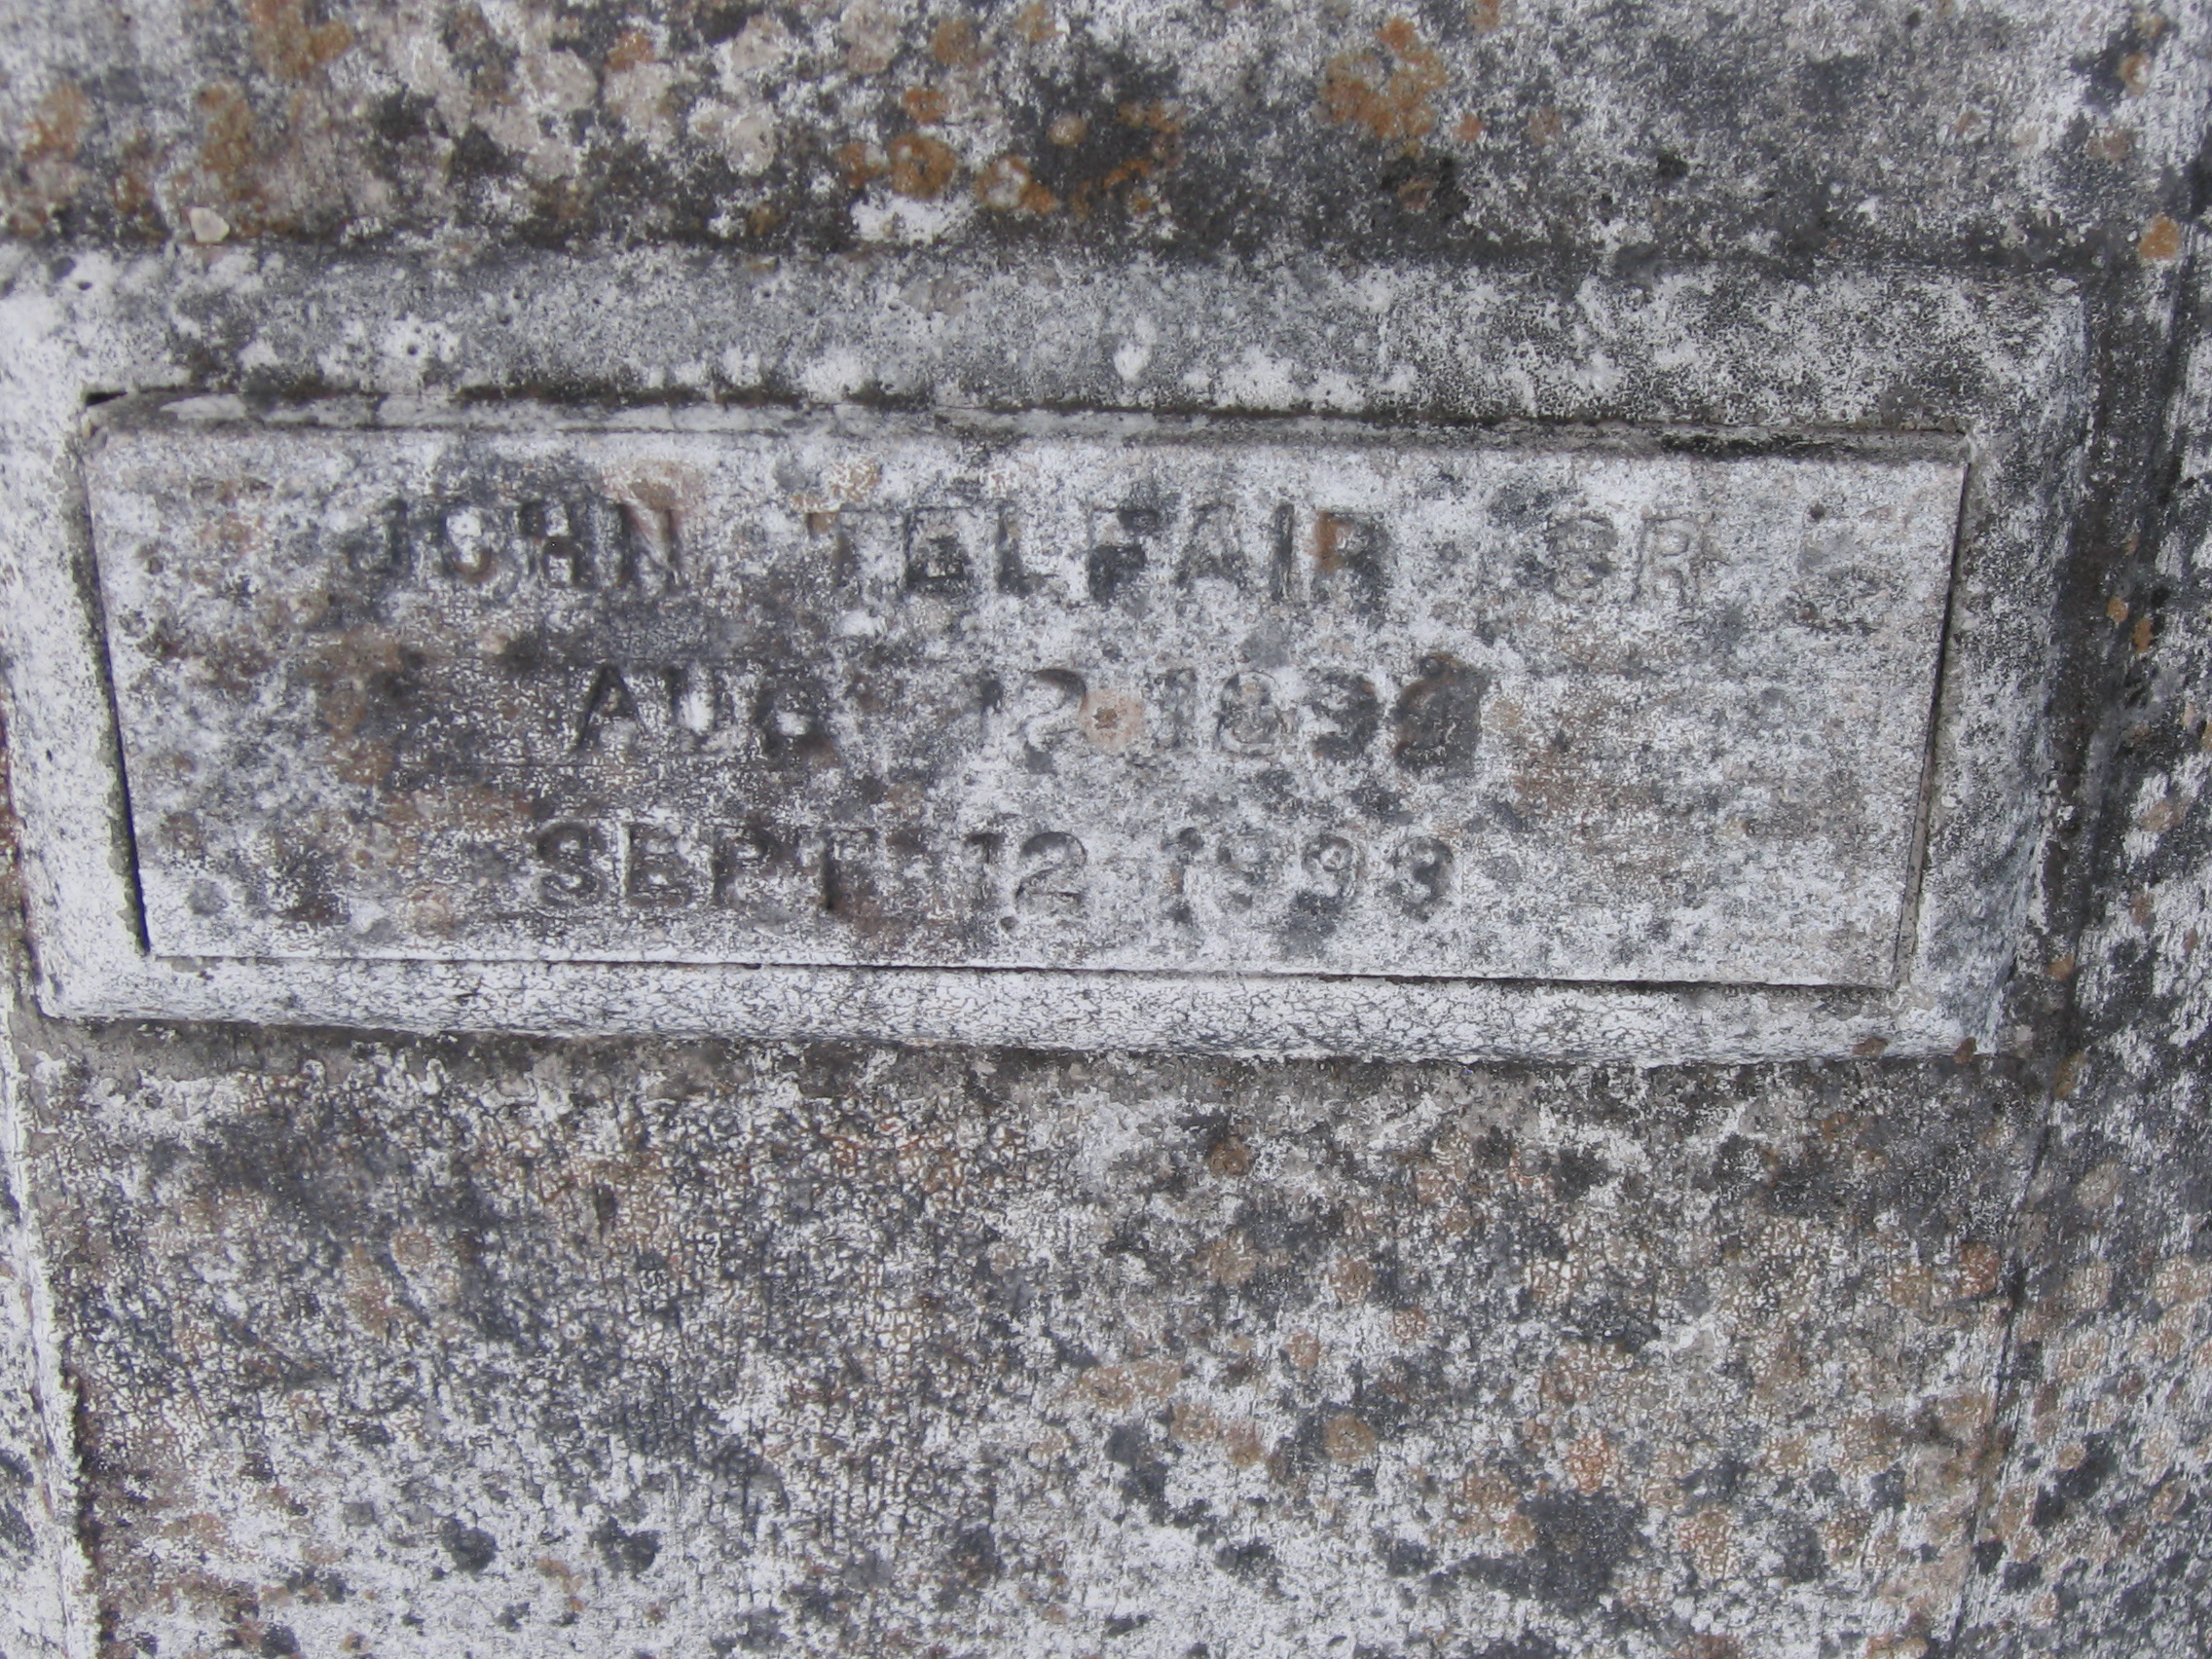 John Telfair, Sr